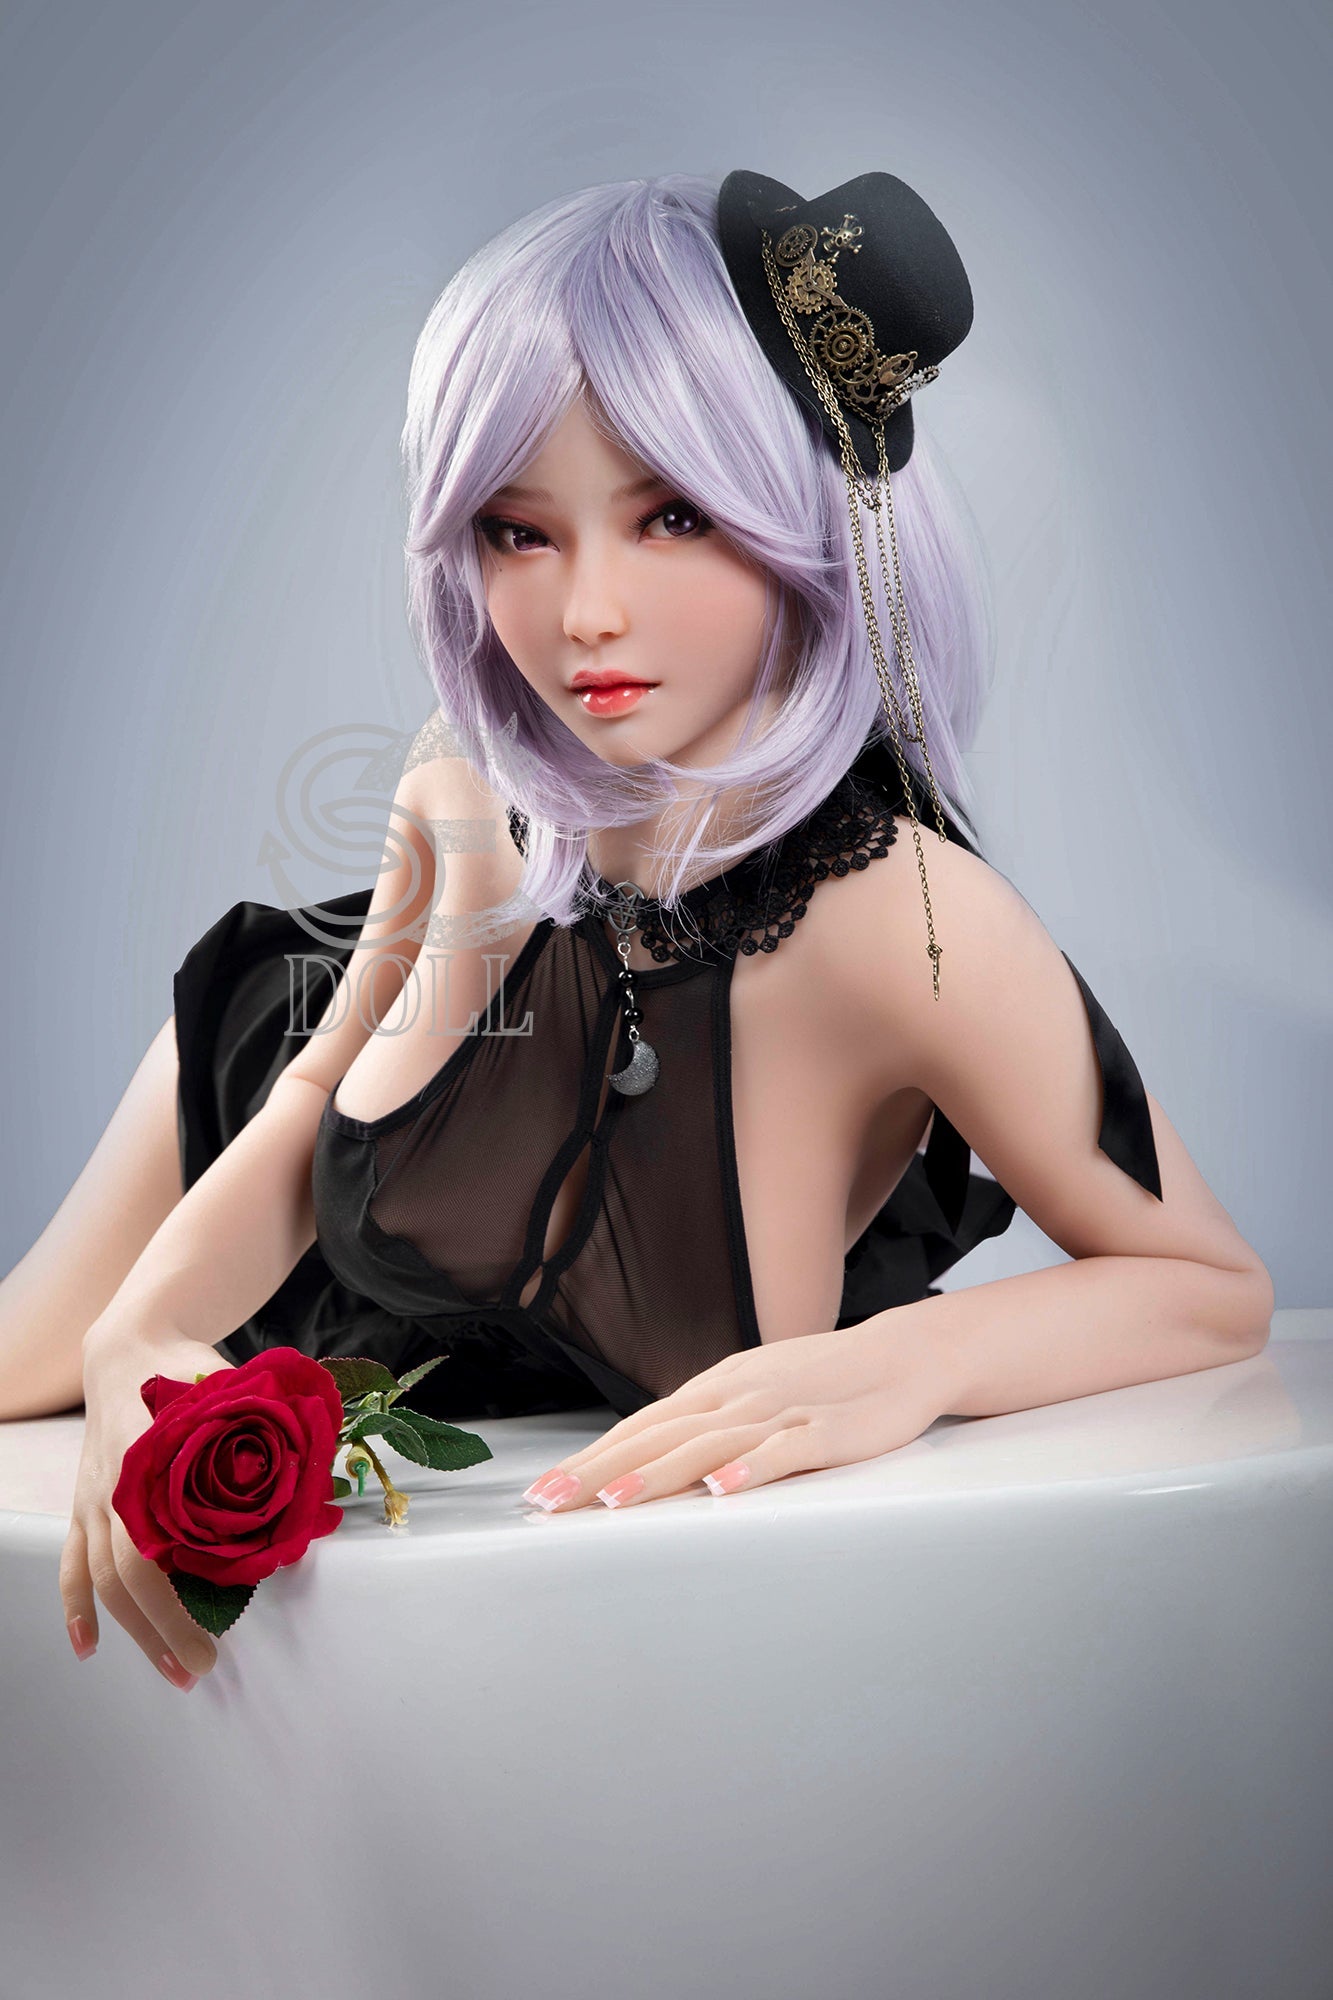 SE Doll - 165 cm F Cup TPE Doll - Miya (5ft 5in) - Love Dolls 4U